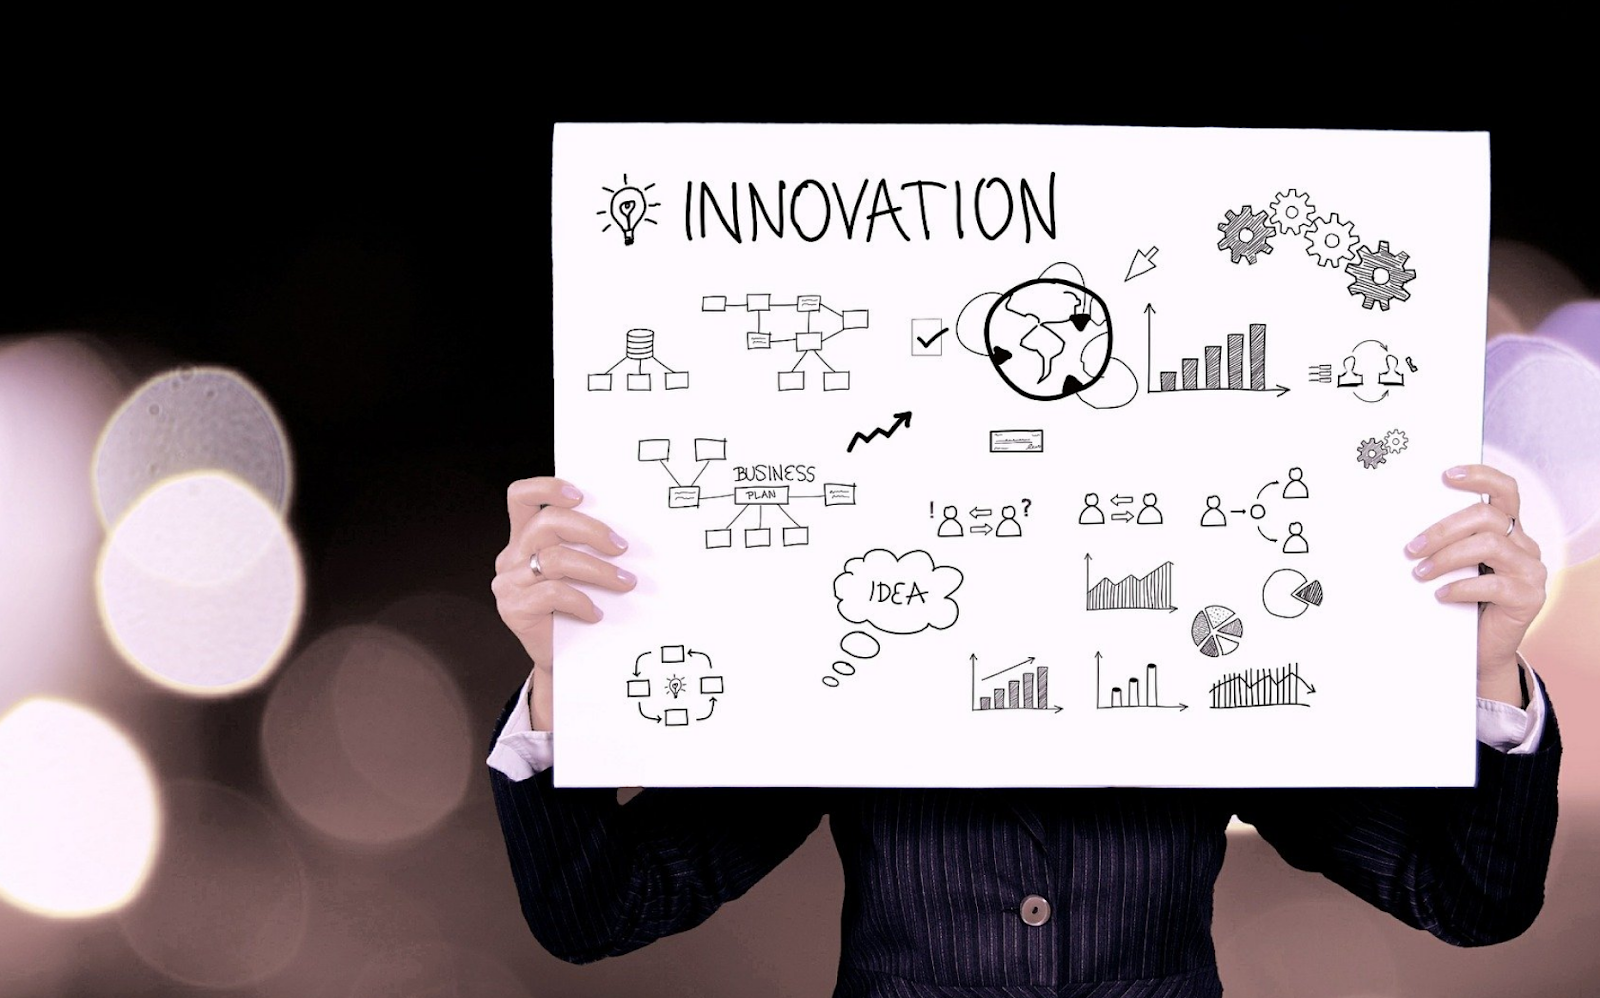 Innovation Statistics, innovation statistics 2019, technology innovation statistics, innovation statistics 2018, innovation statistics 2020